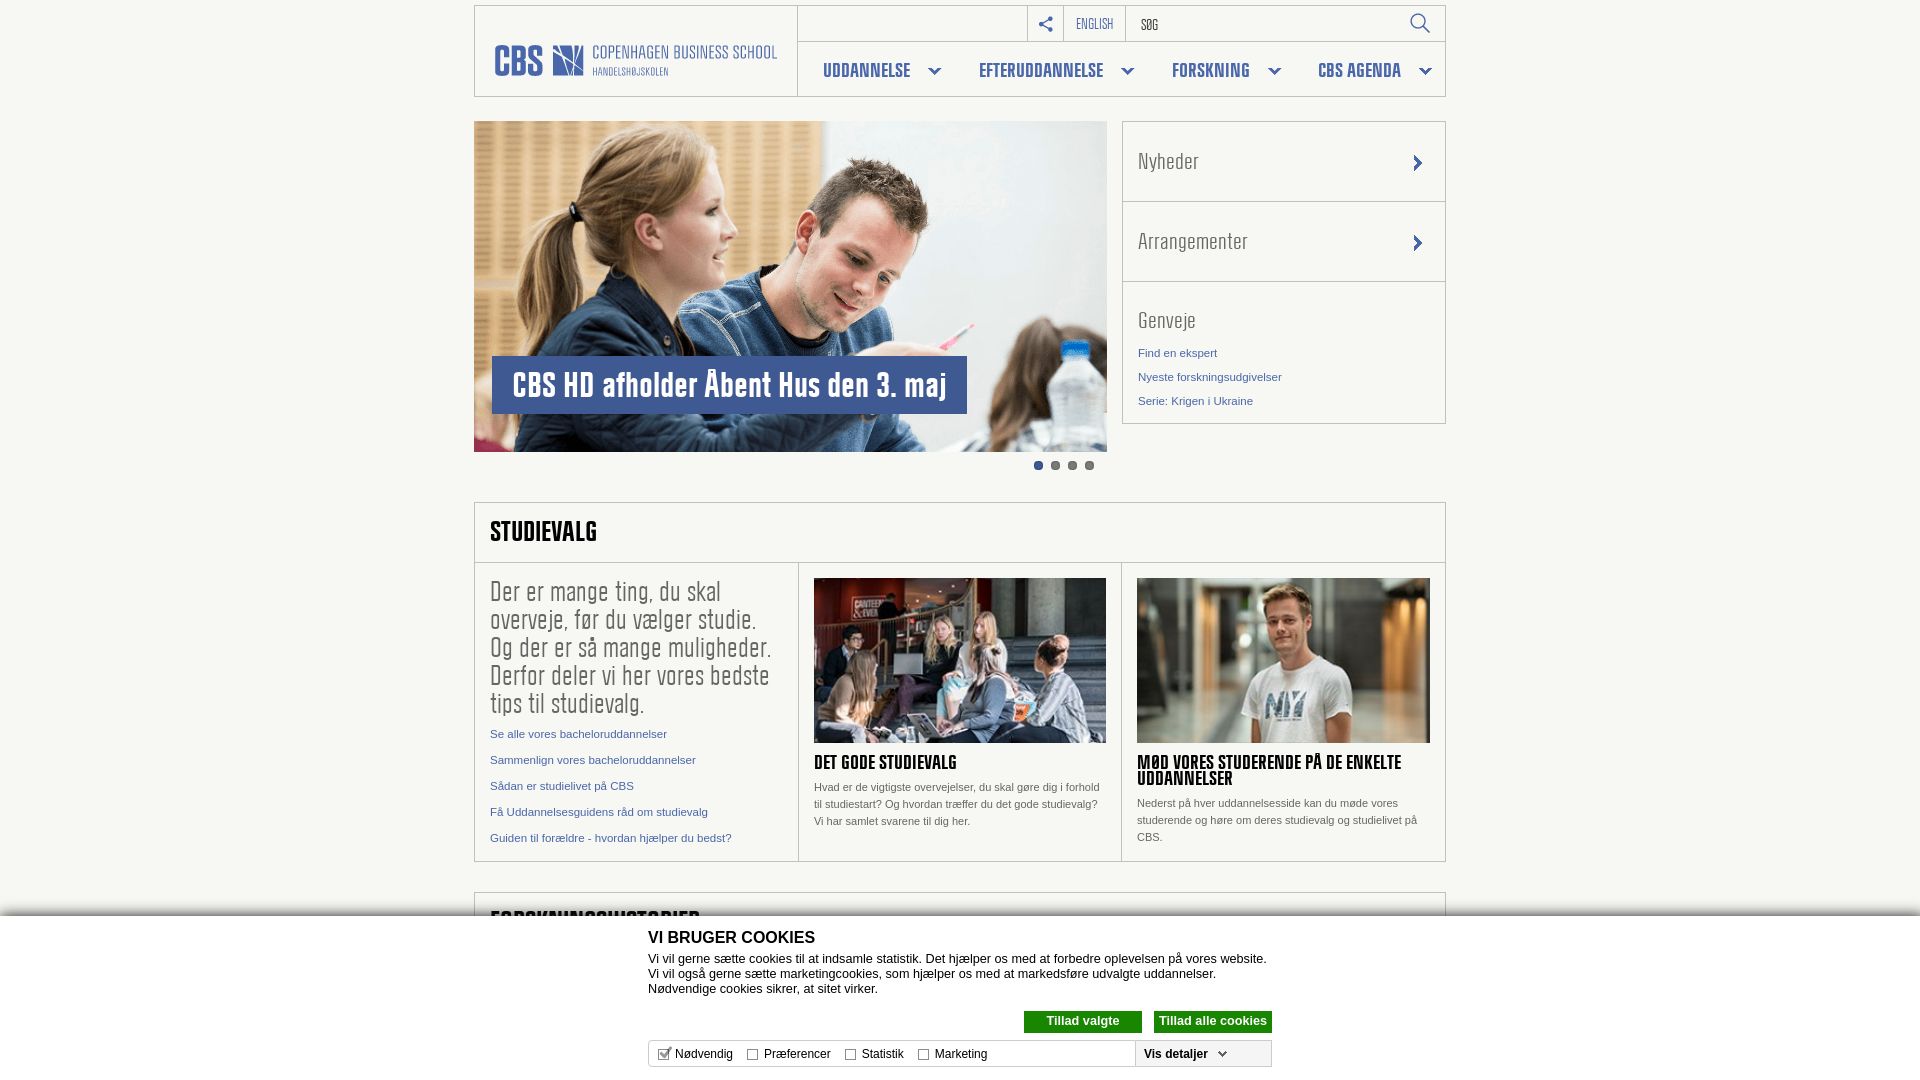 Stato del sito web cbs.dk è   ONLINE